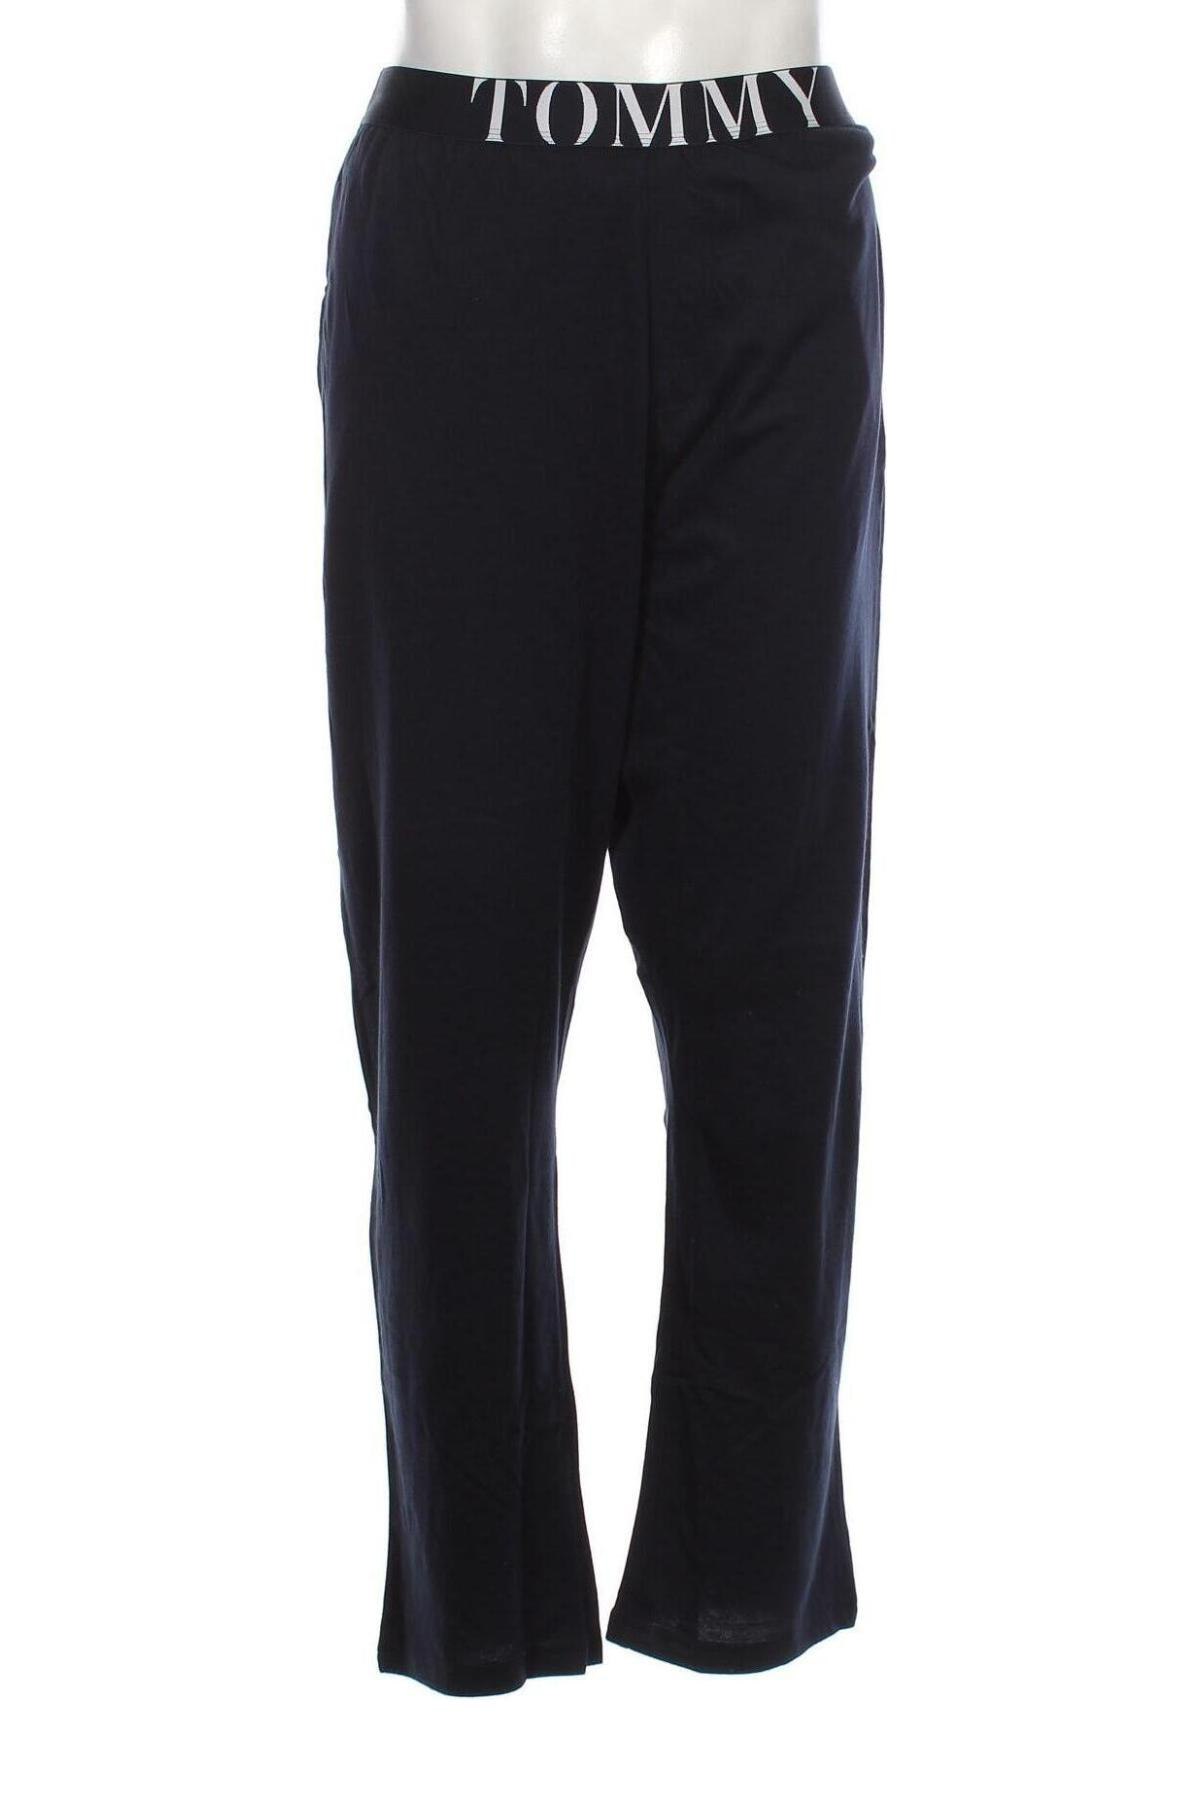 Πιτζάμες Tommy Hilfiger, Μέγεθος XL, Χρώμα Μπλέ, Τιμή 34,36 €